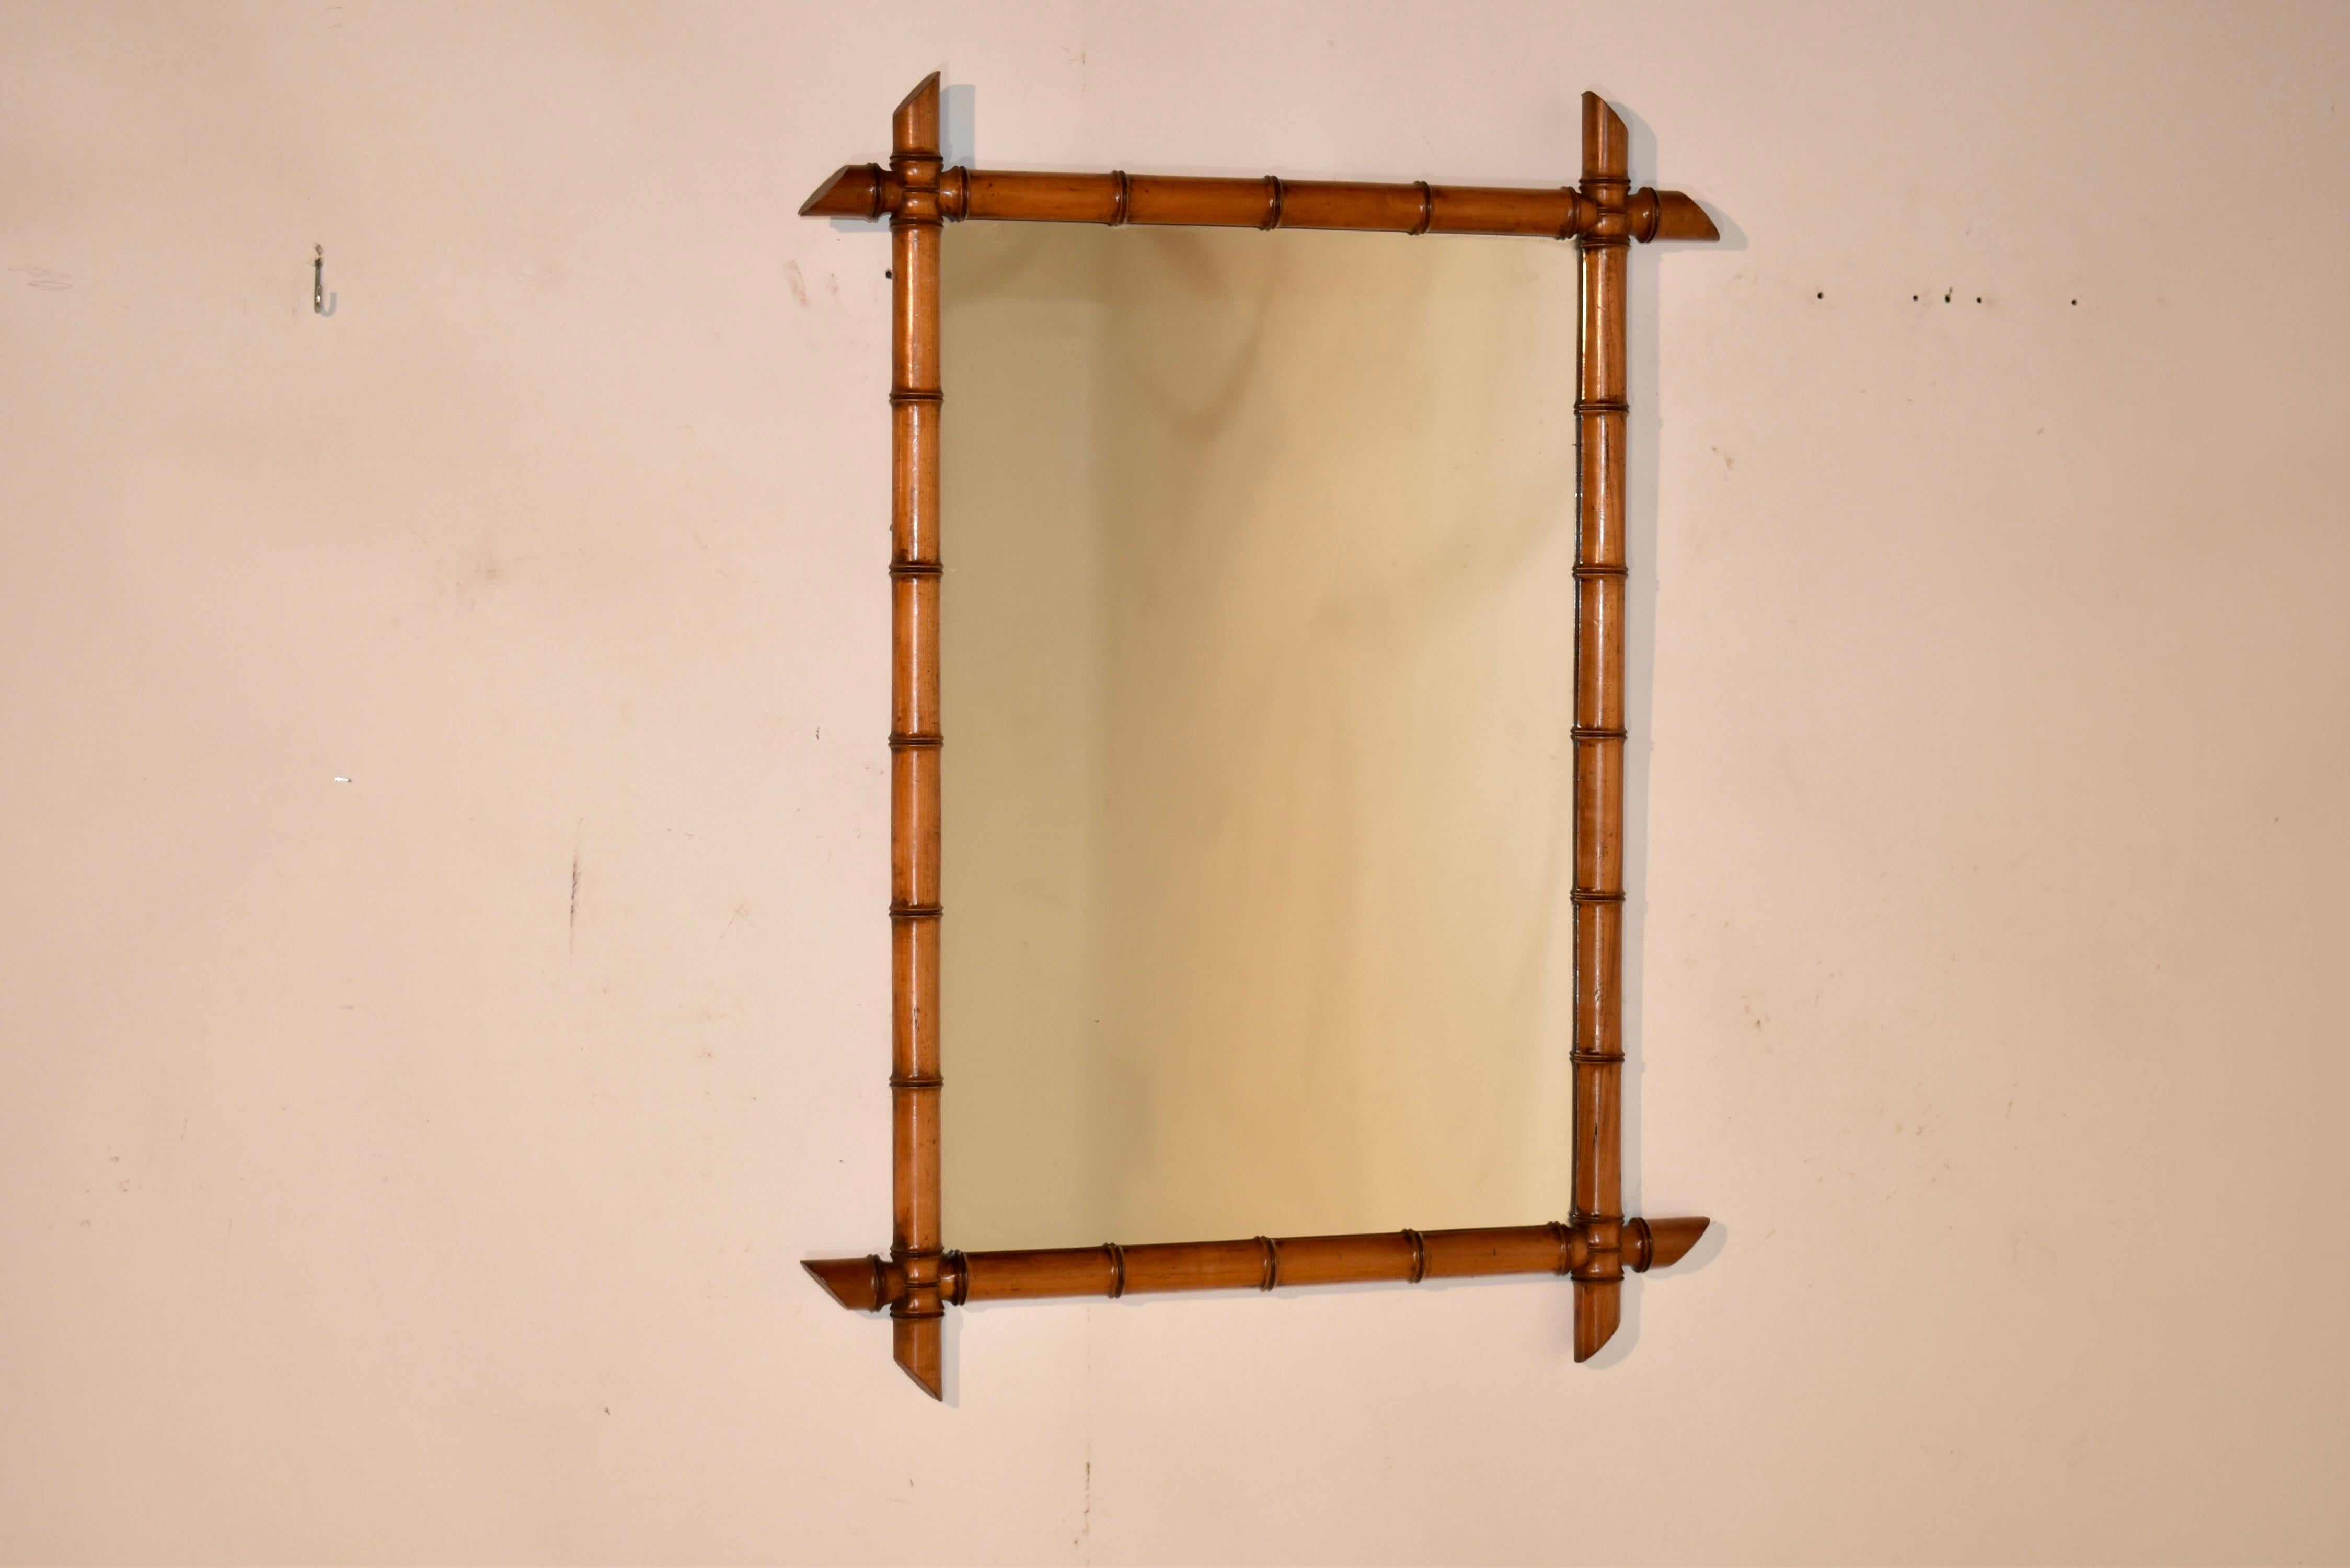 Ende des 19. Jahrhunderts in Frankreich aus Kirsche gefertigter Spiegel aus Bambusimitat. Der Rahmen ist von Hand gedrechselt und sieht aus wie Bambus, ist aber aus reicher Kirsche gefertigt und behält seine ursprüngliche Farbe und Patina. Die Ecken